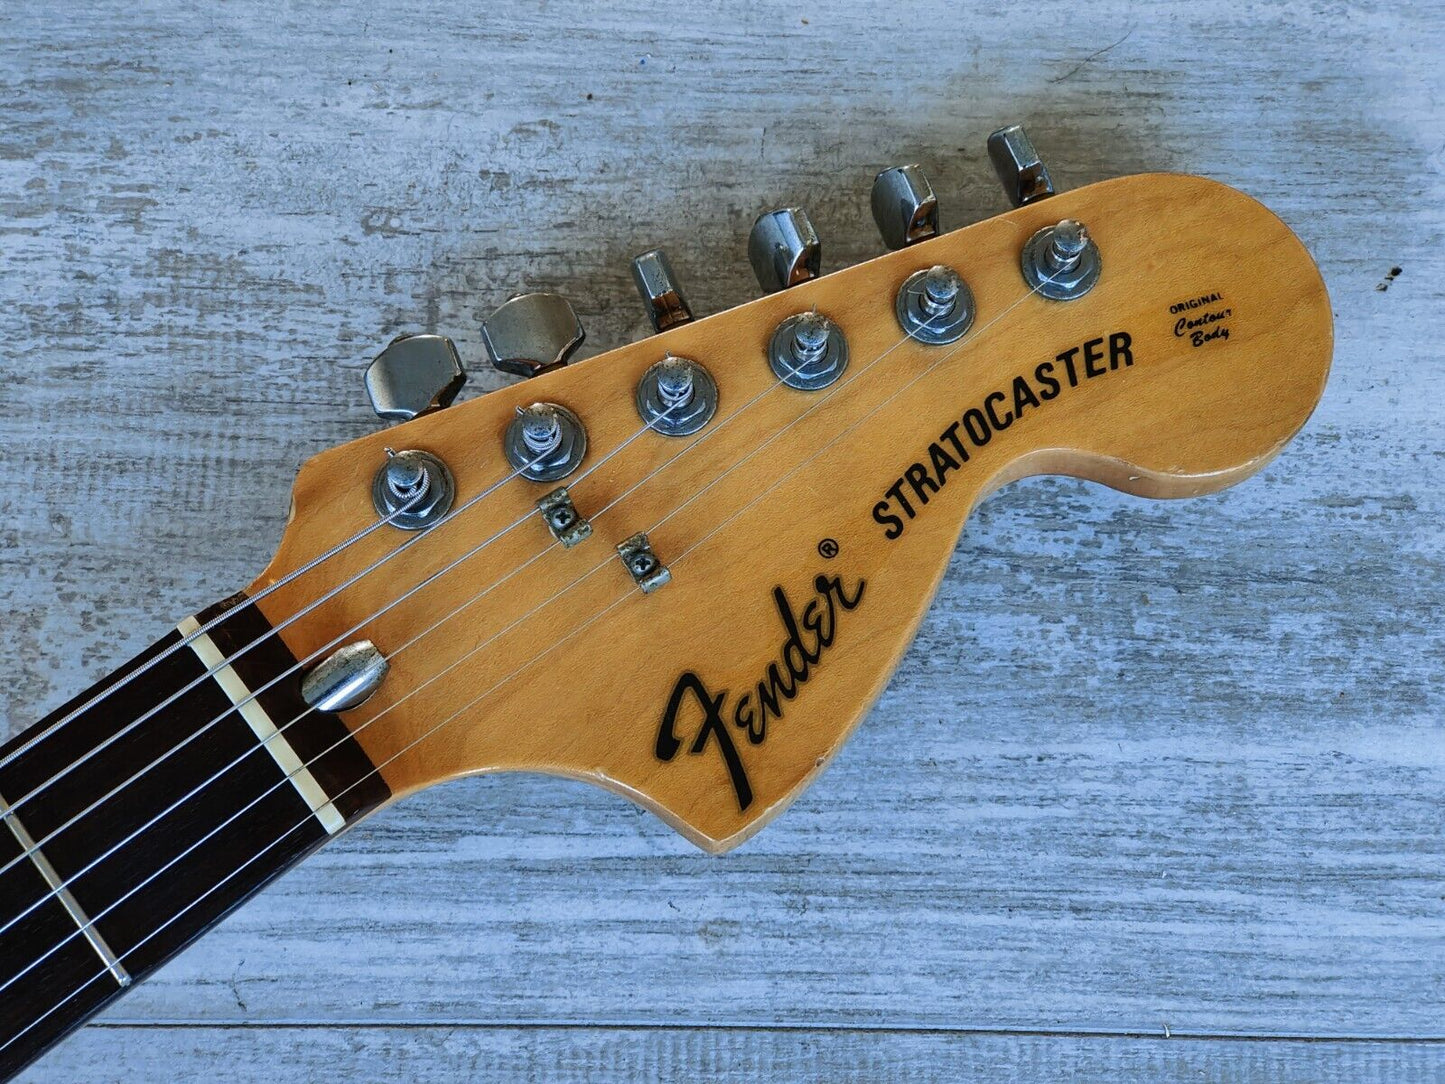 1989 Fender Japan ST72-65 '72 Reissue Blackmore Scalloped Stratocaster (White)